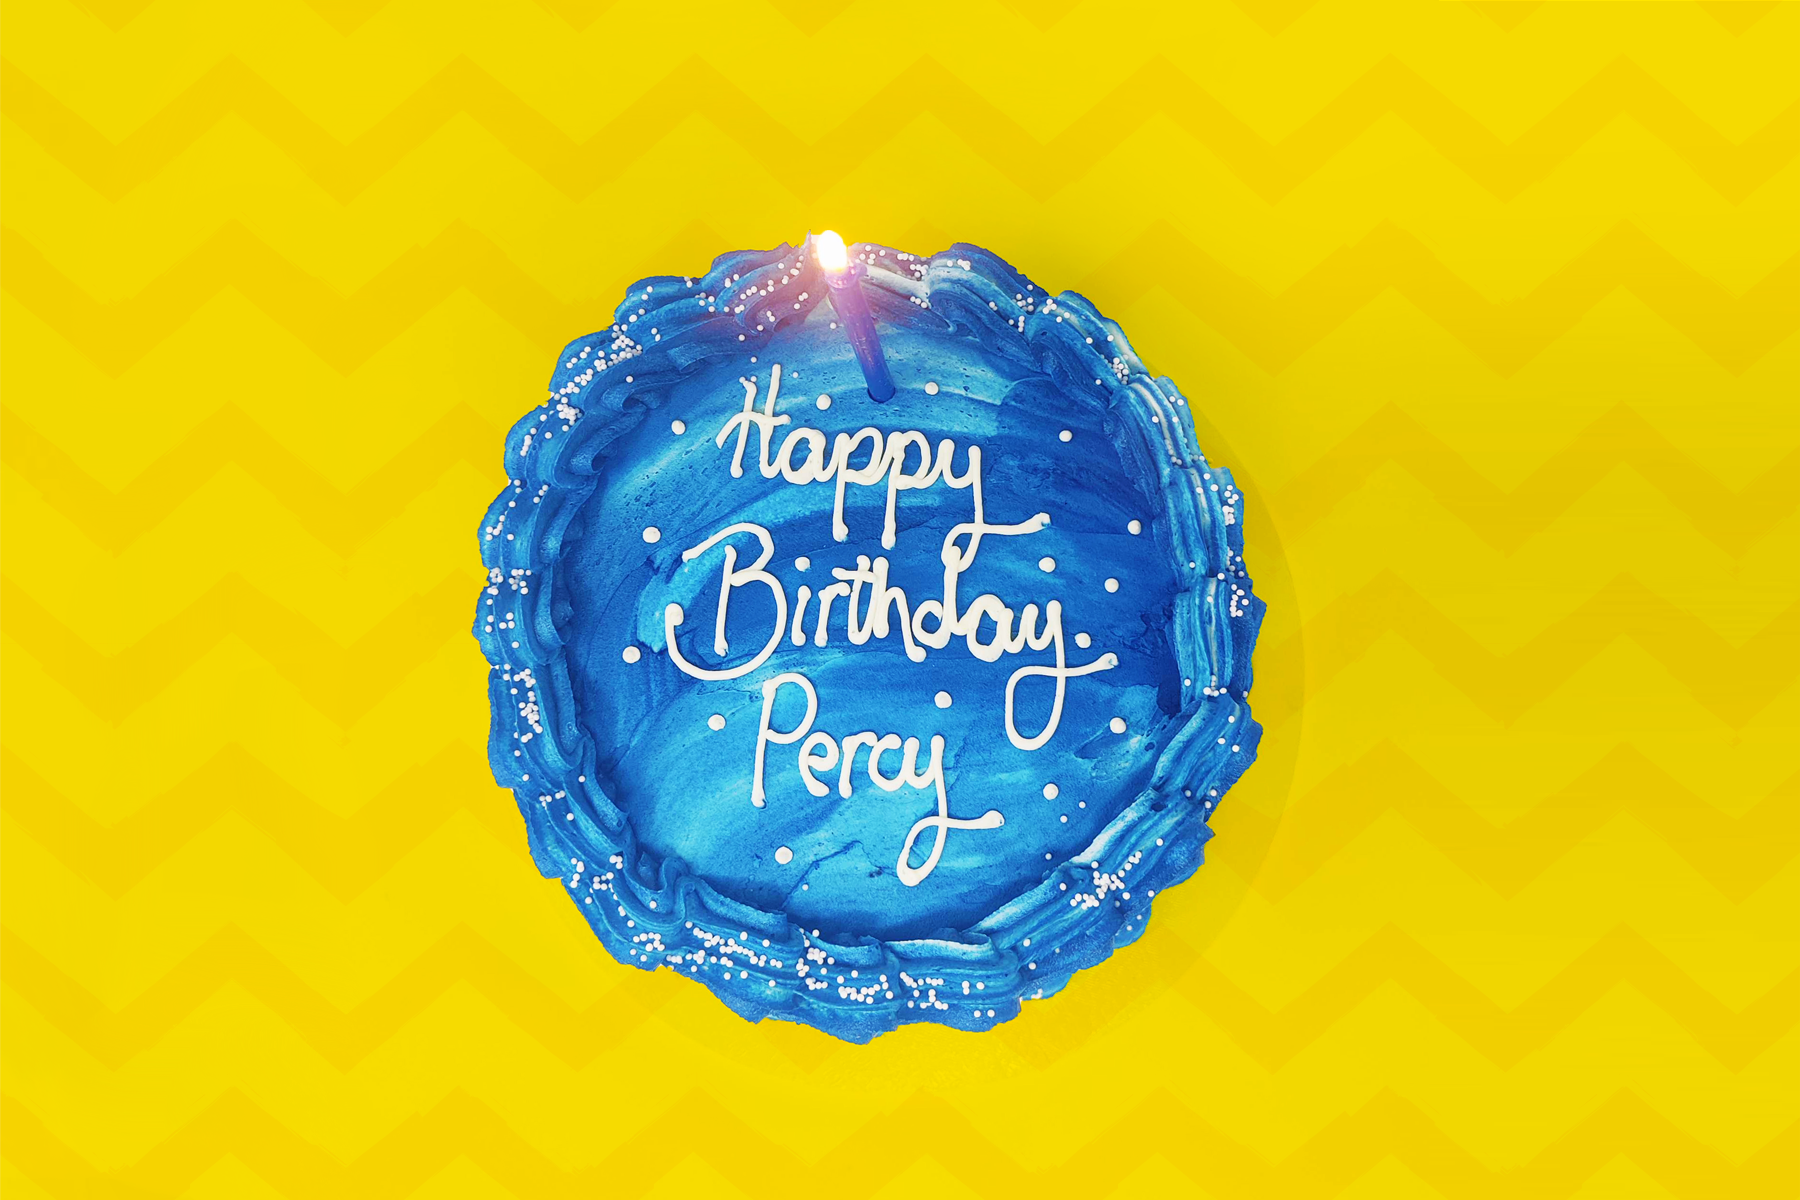 Bạn có yêu thích Percy Jackson và muốn làm một chiếc bánh thật đặc biệt cho mình? Đừng lo lắng, bạn có thể tìm thấy những ý tưởng cho chiếc bánh đó trong hình ảnh liên quan đến \